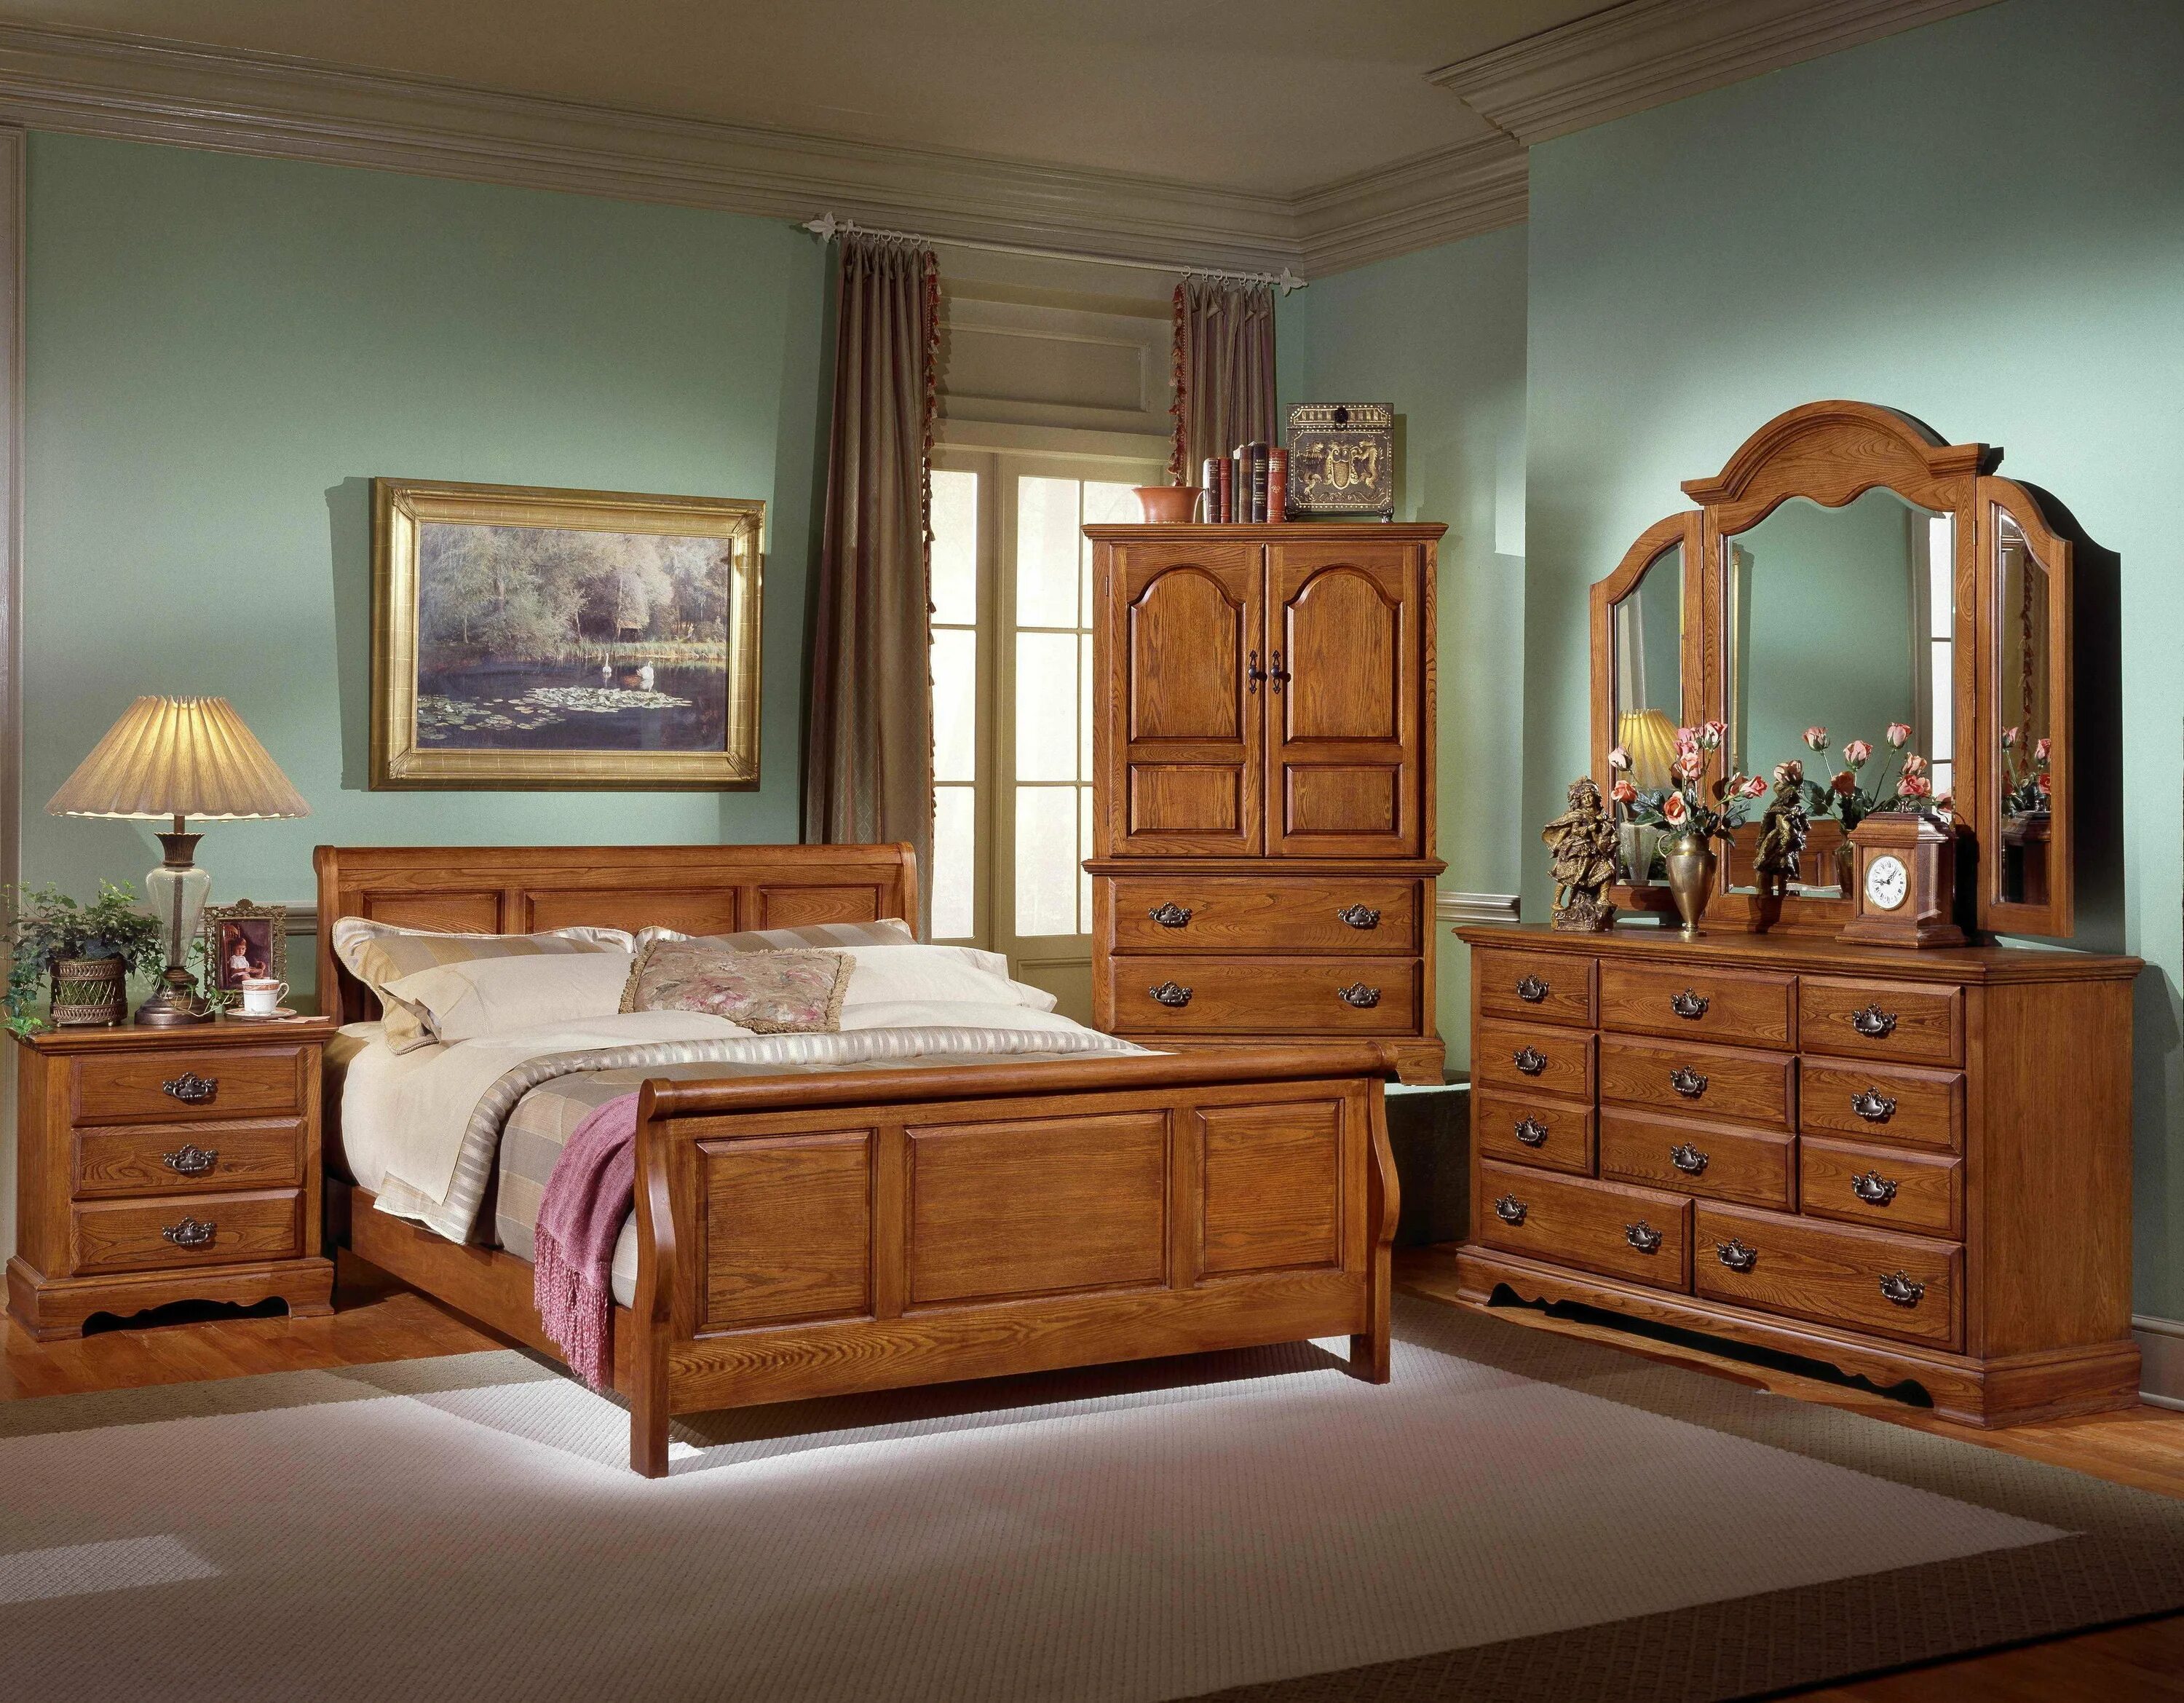 Спальня из массива гевеи 4934. Румынская мебель Легаси ирландский стиль Кантри. Красивая деревянная мебель. Спальня из дерева. Wooden мебель